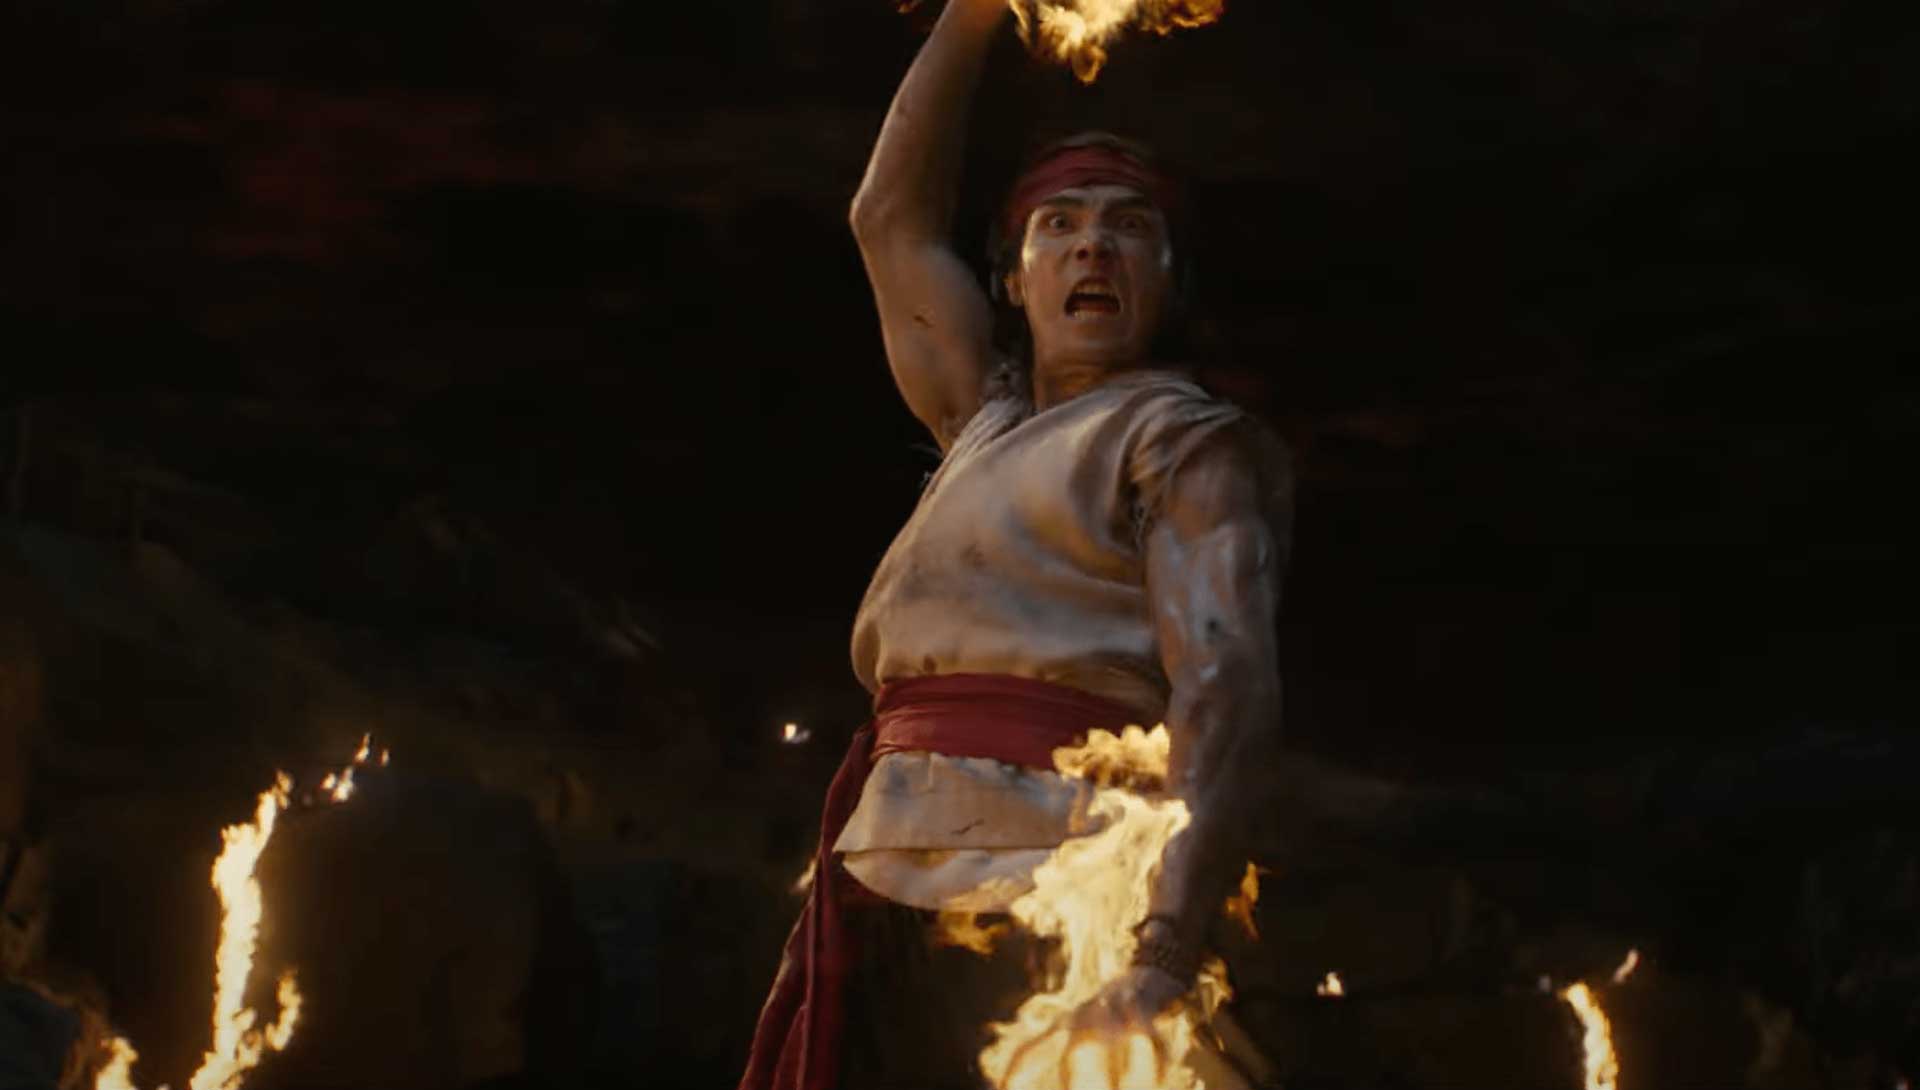 لیو کانگ با قدرت آتشین در فیلم مورتال کمبت جدید سال ۲۰۲۱ با اقتباس از سری بازی Mortal Kombat